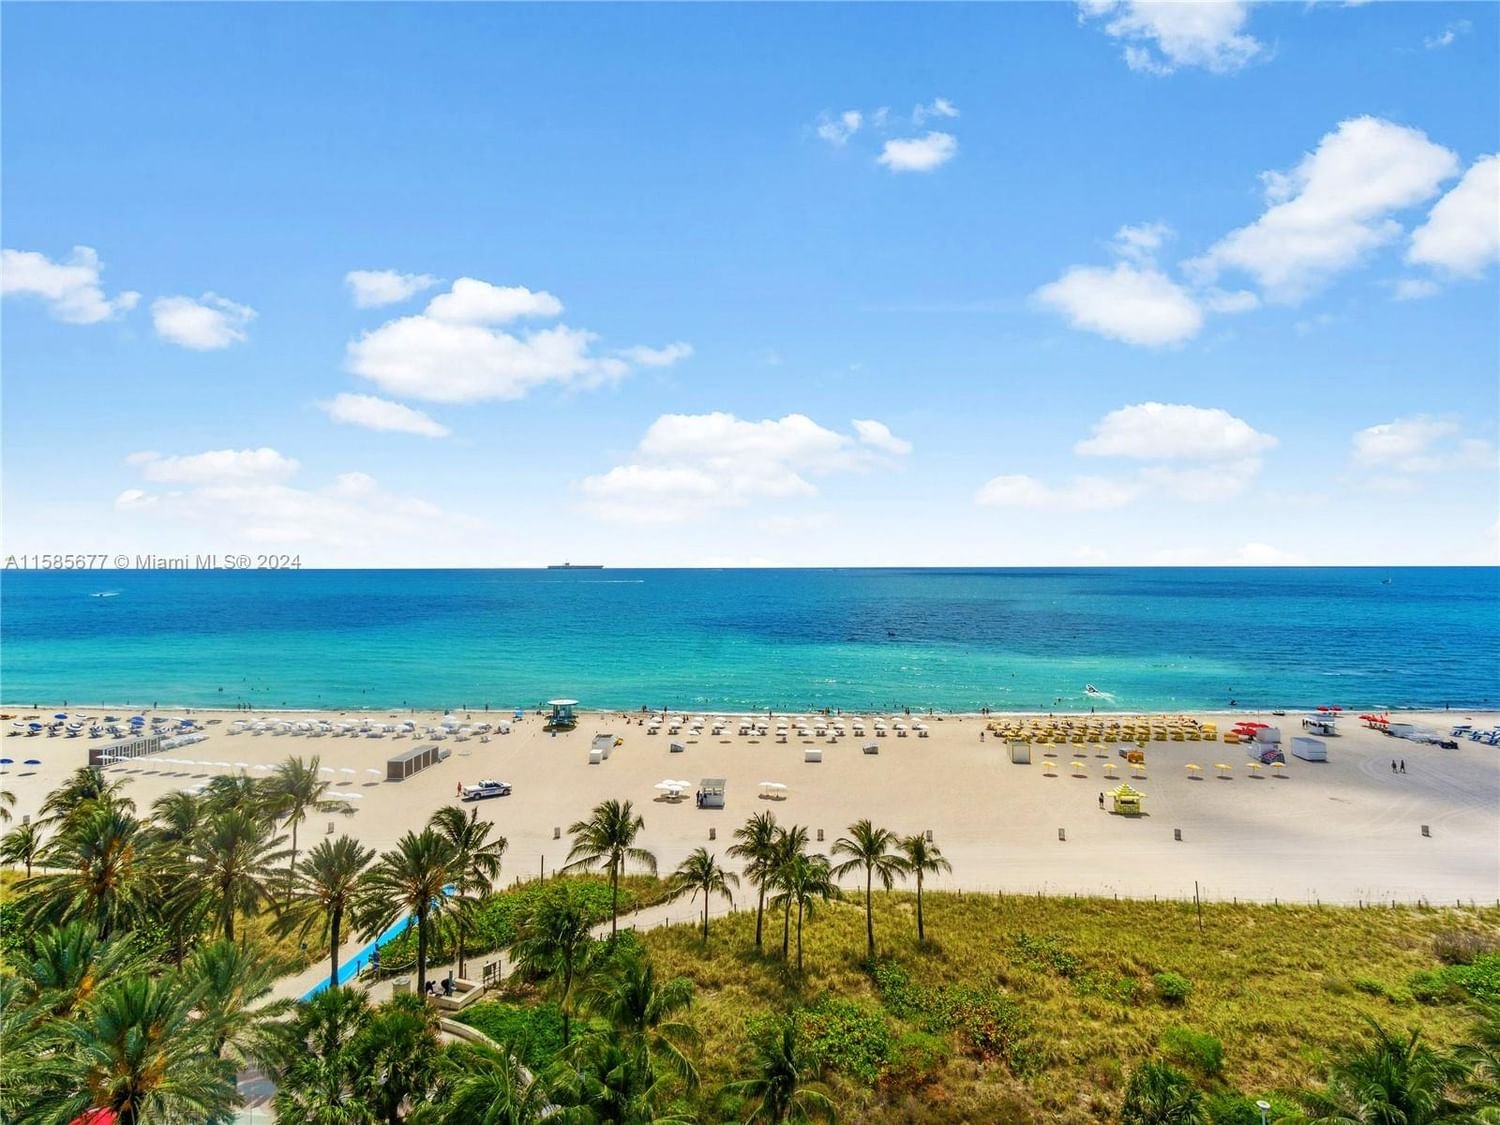 Real estate property located at 100 Lincoln Rd #1047, Miami-Dade County, THE DECOPLAGE CONDO, Miami Beach, FL